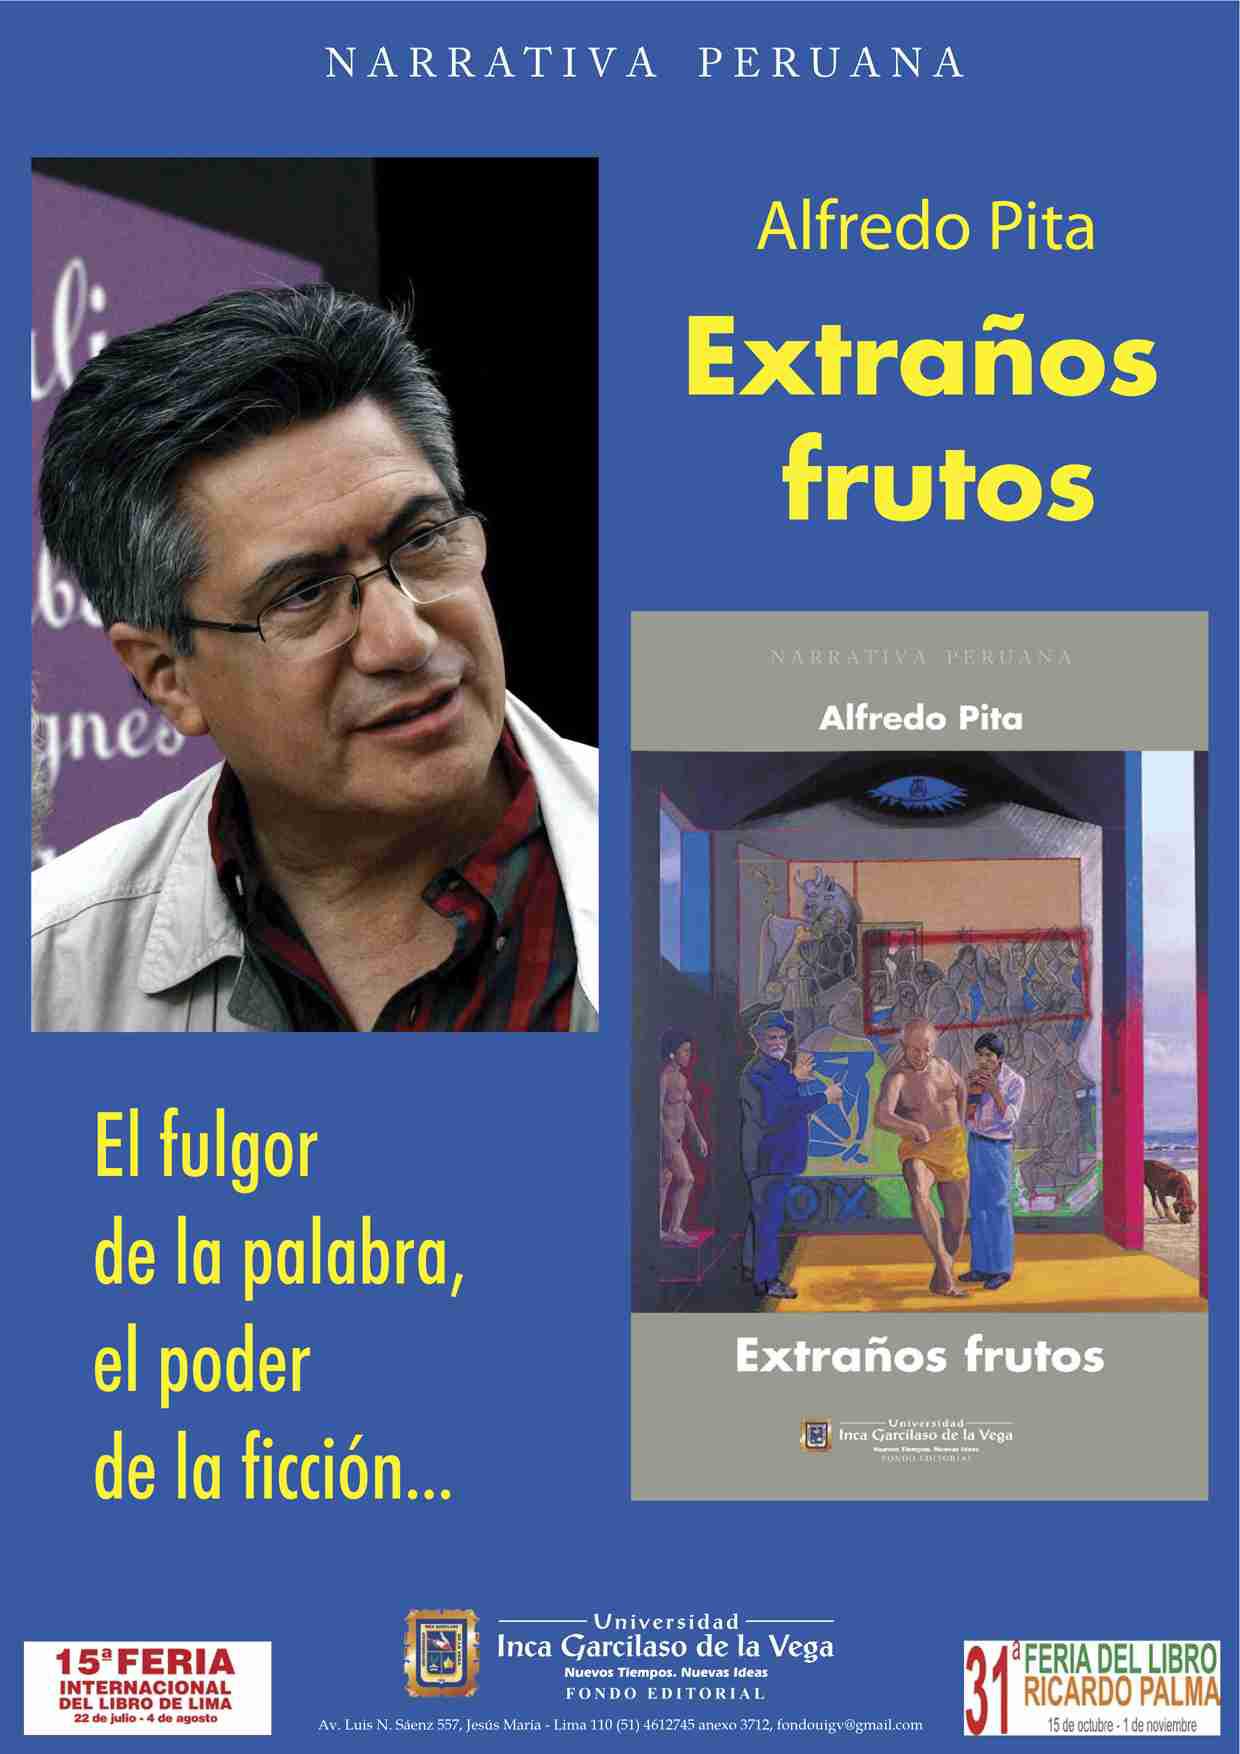 Alfredo Pita, Extraños frutos, ed. Fondo editorial UIGV. Rencontre mercredi 17 novembre à 19h